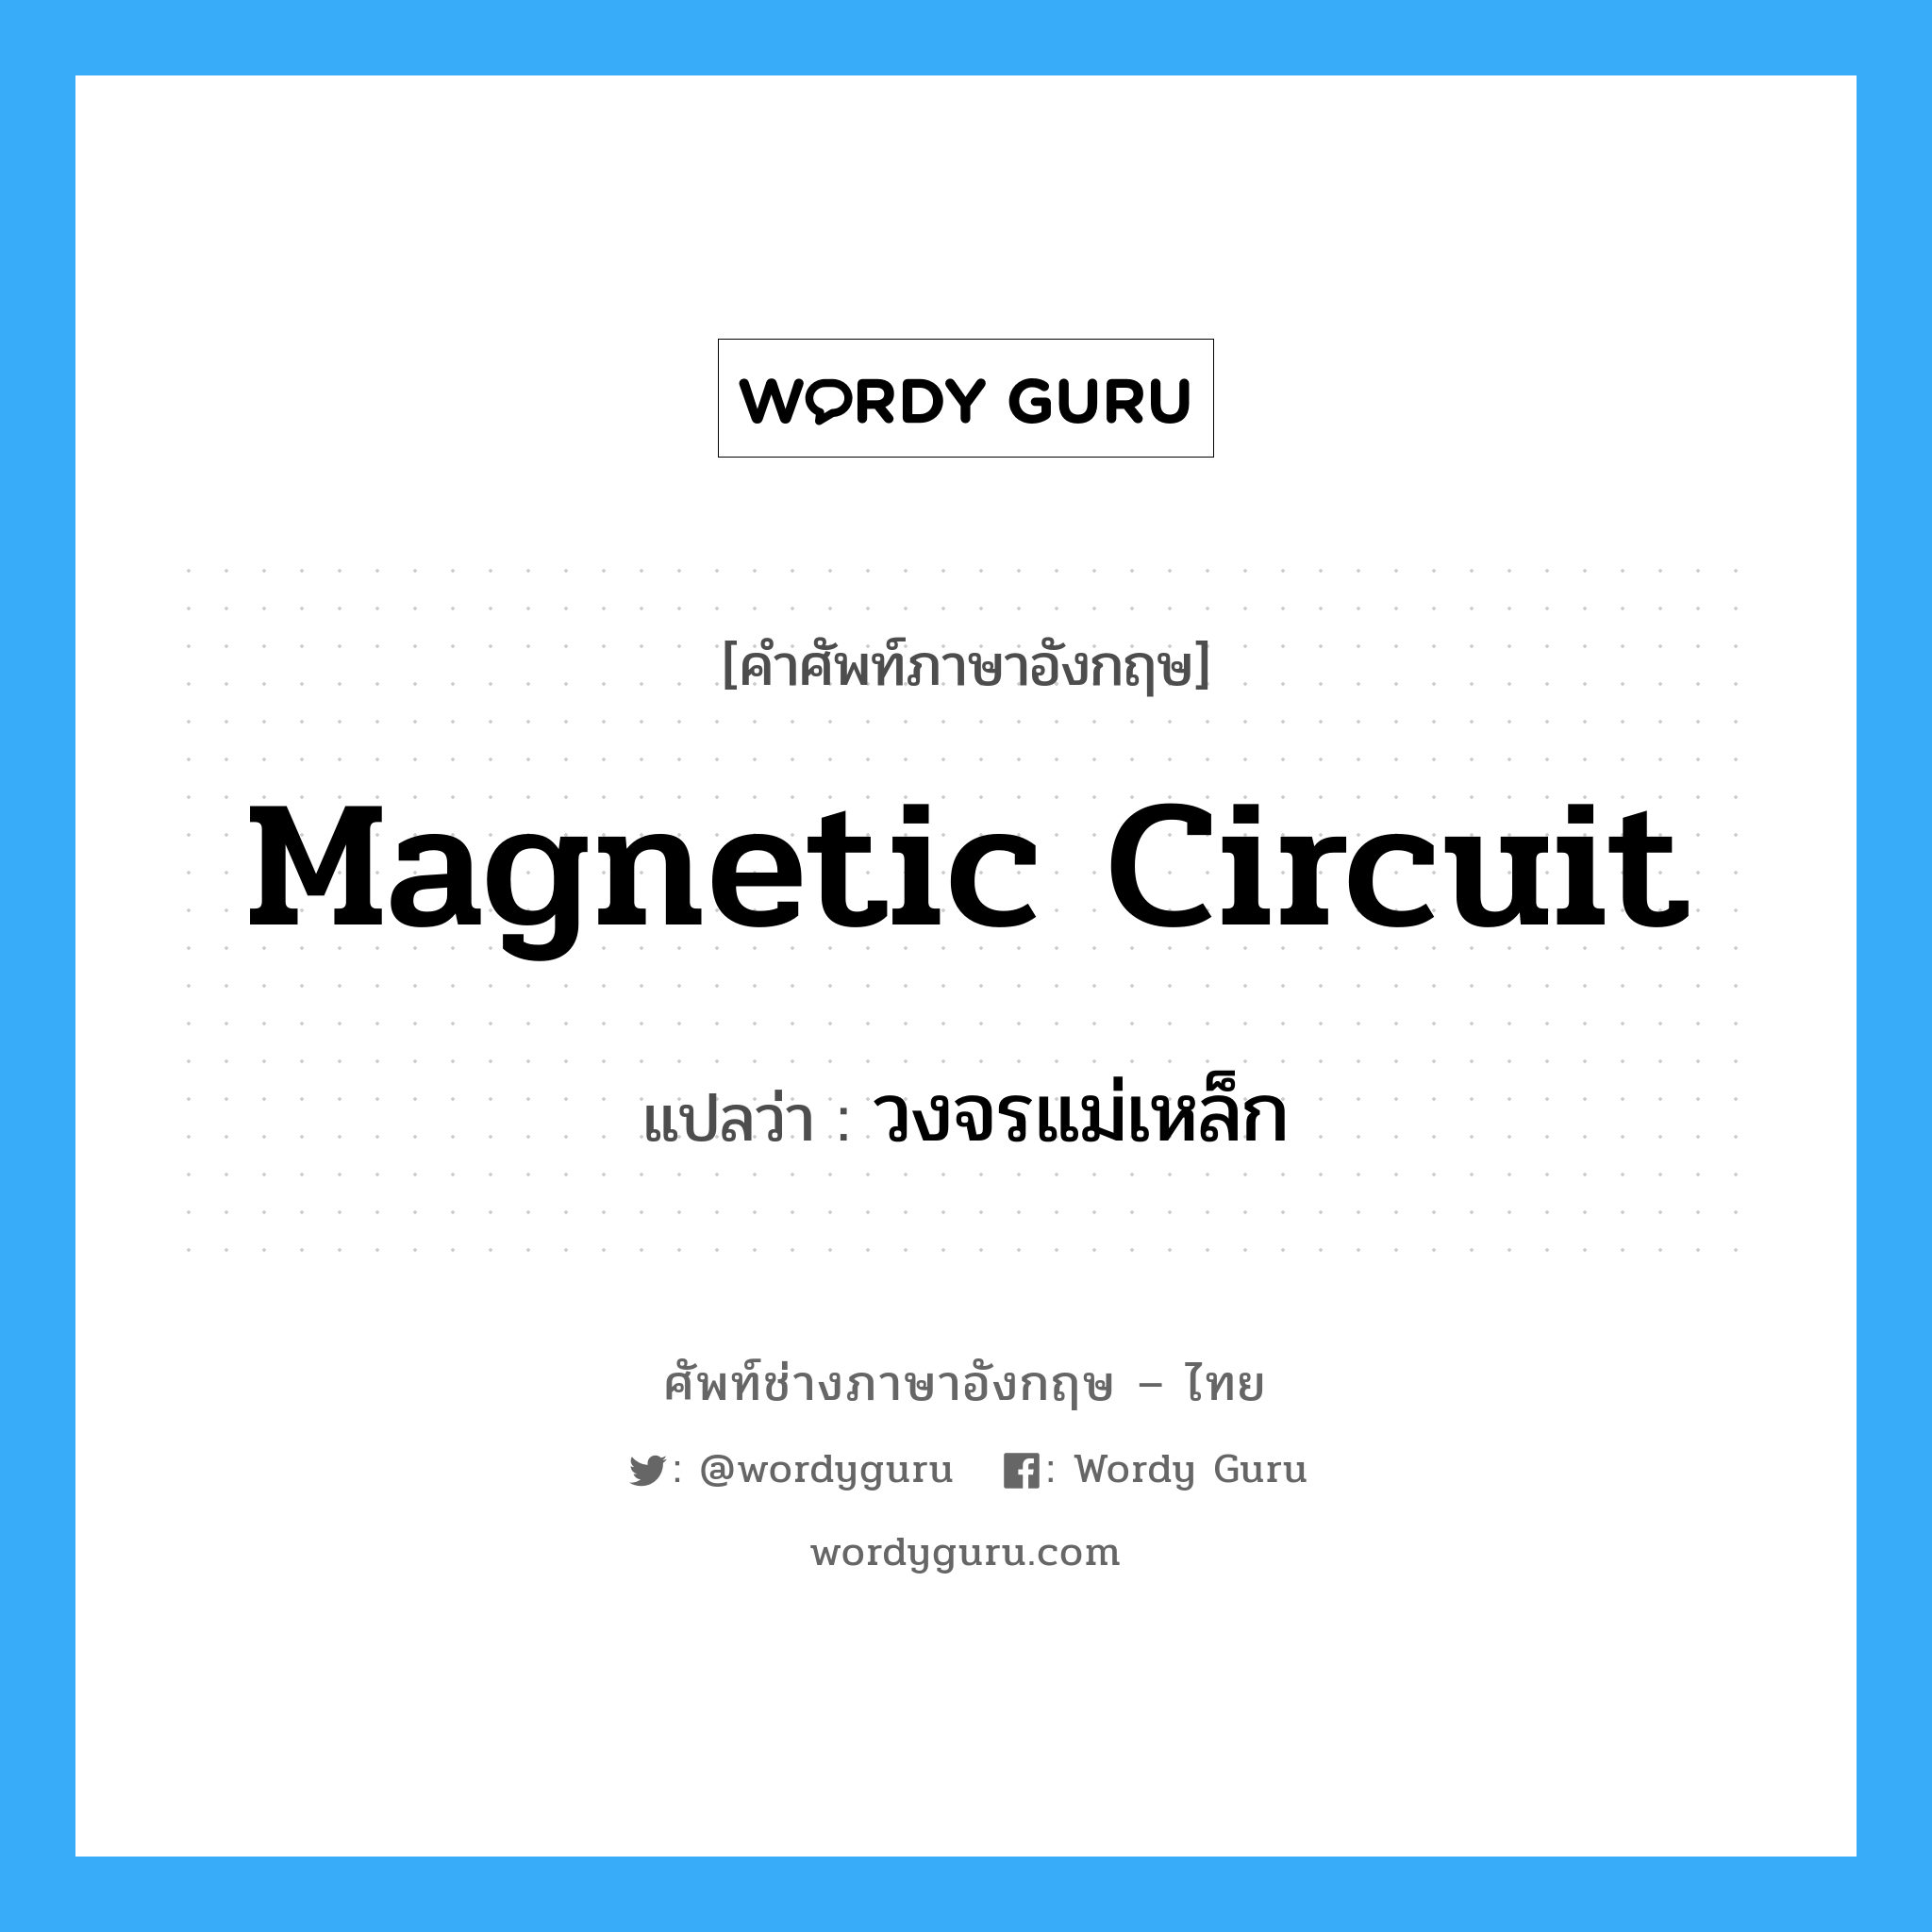 วงจรแม่เหล็ก ภาษาอังกฤษ?, คำศัพท์ช่างภาษาอังกฤษ - ไทย วงจรแม่เหล็ก คำศัพท์ภาษาอังกฤษ วงจรแม่เหล็ก แปลว่า magnetic circuit